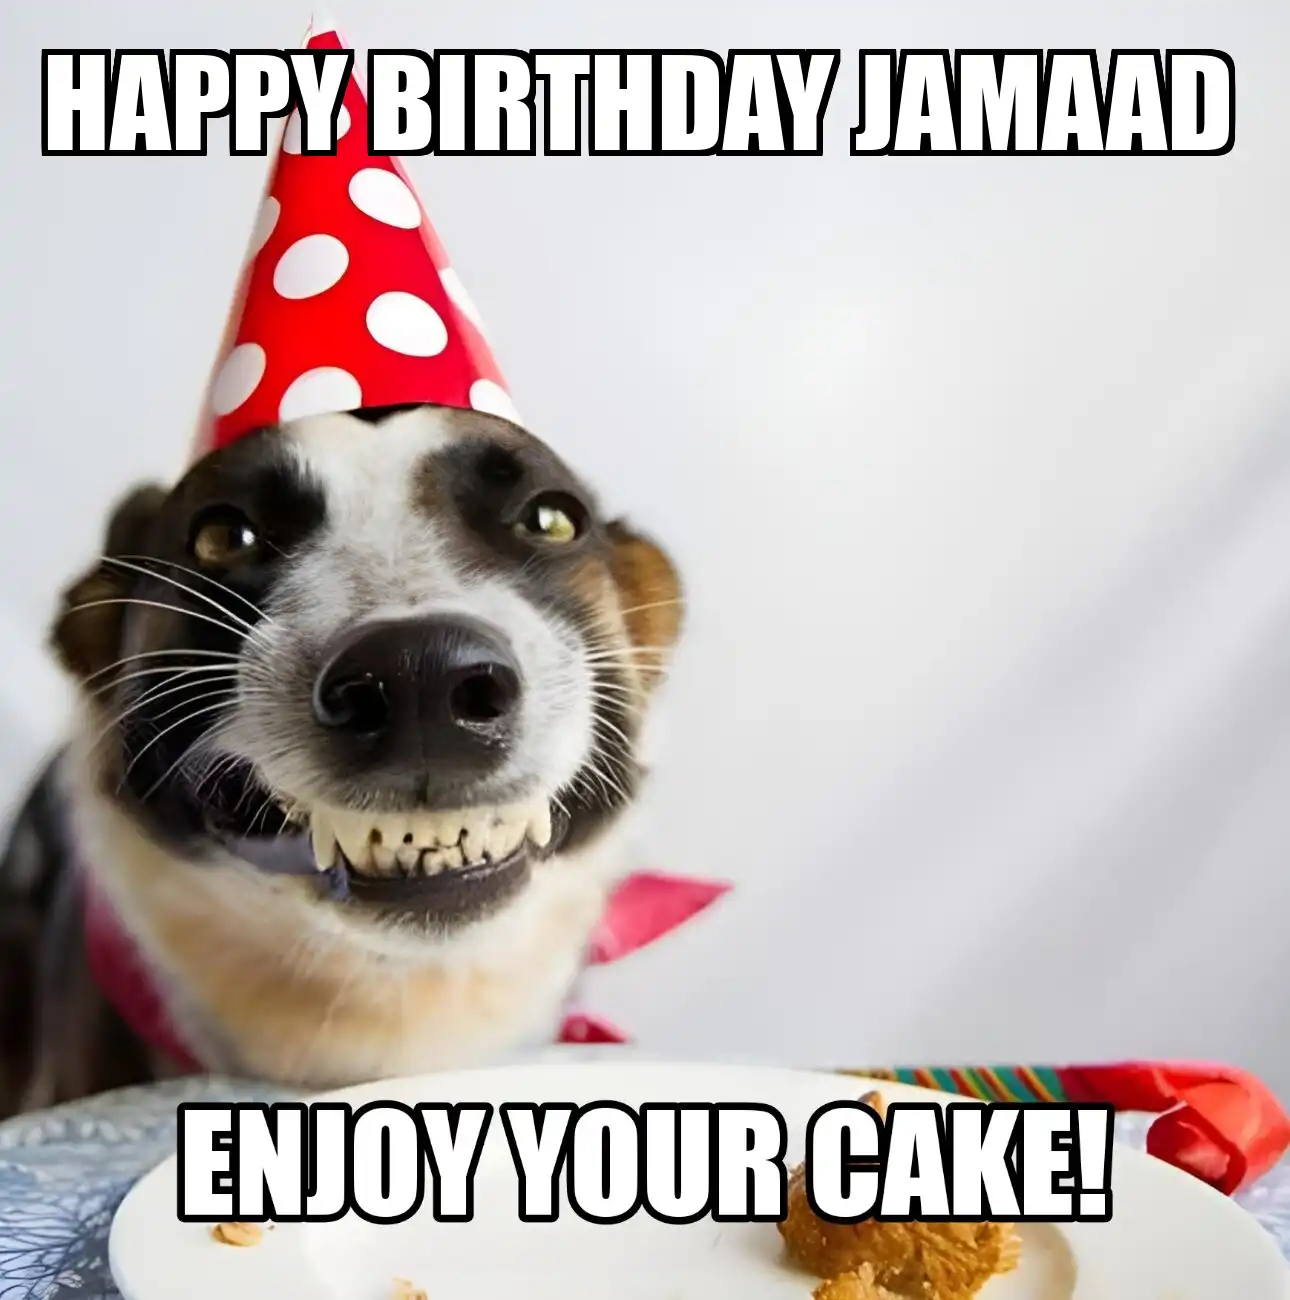 Happy Birthday Jamaad Enjoy Your Cake Dog Meme